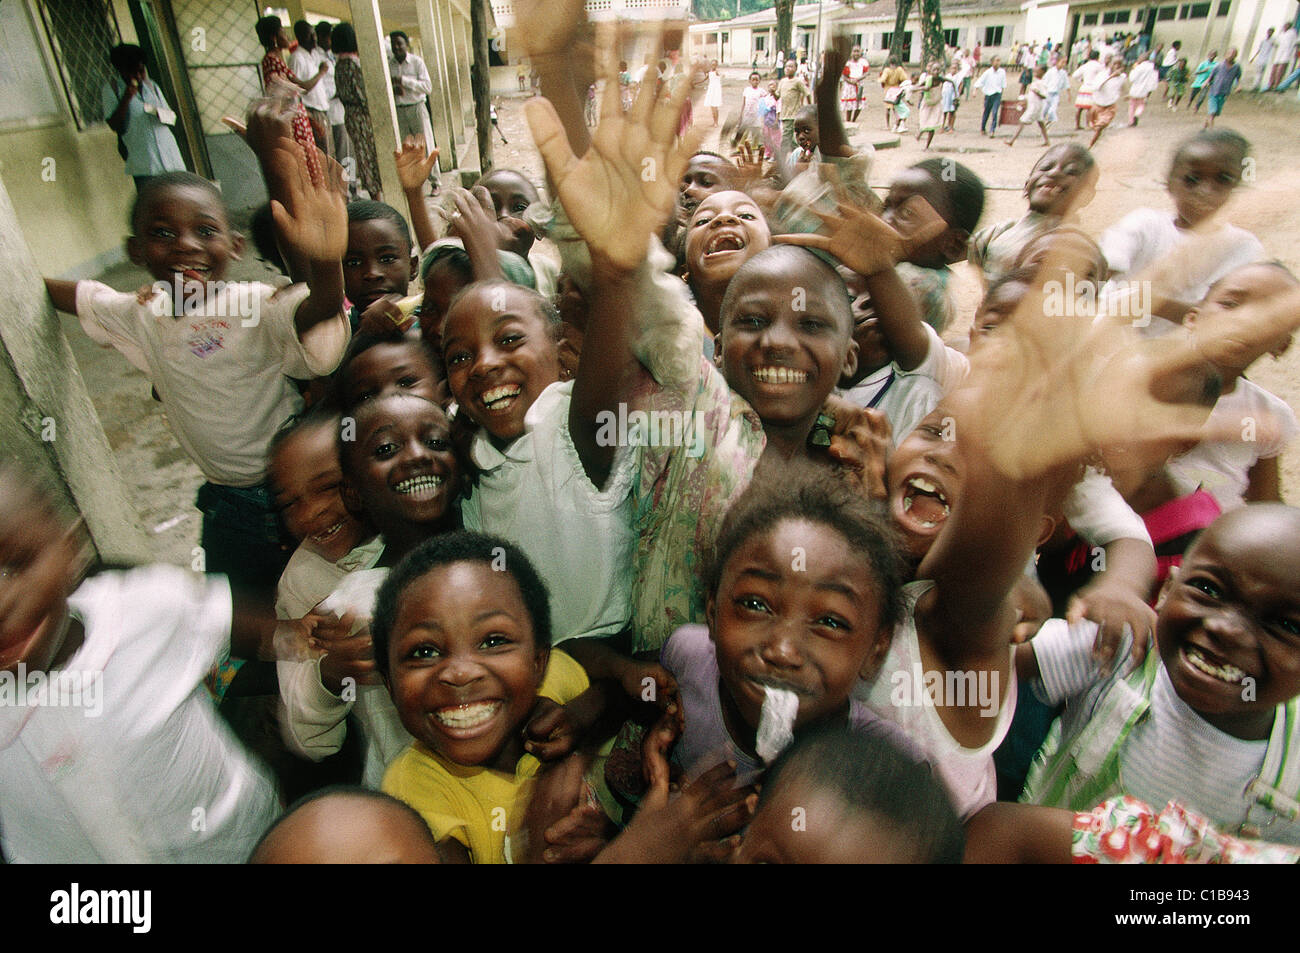 Cameroon, Douala city, schoolboys Stock Photo